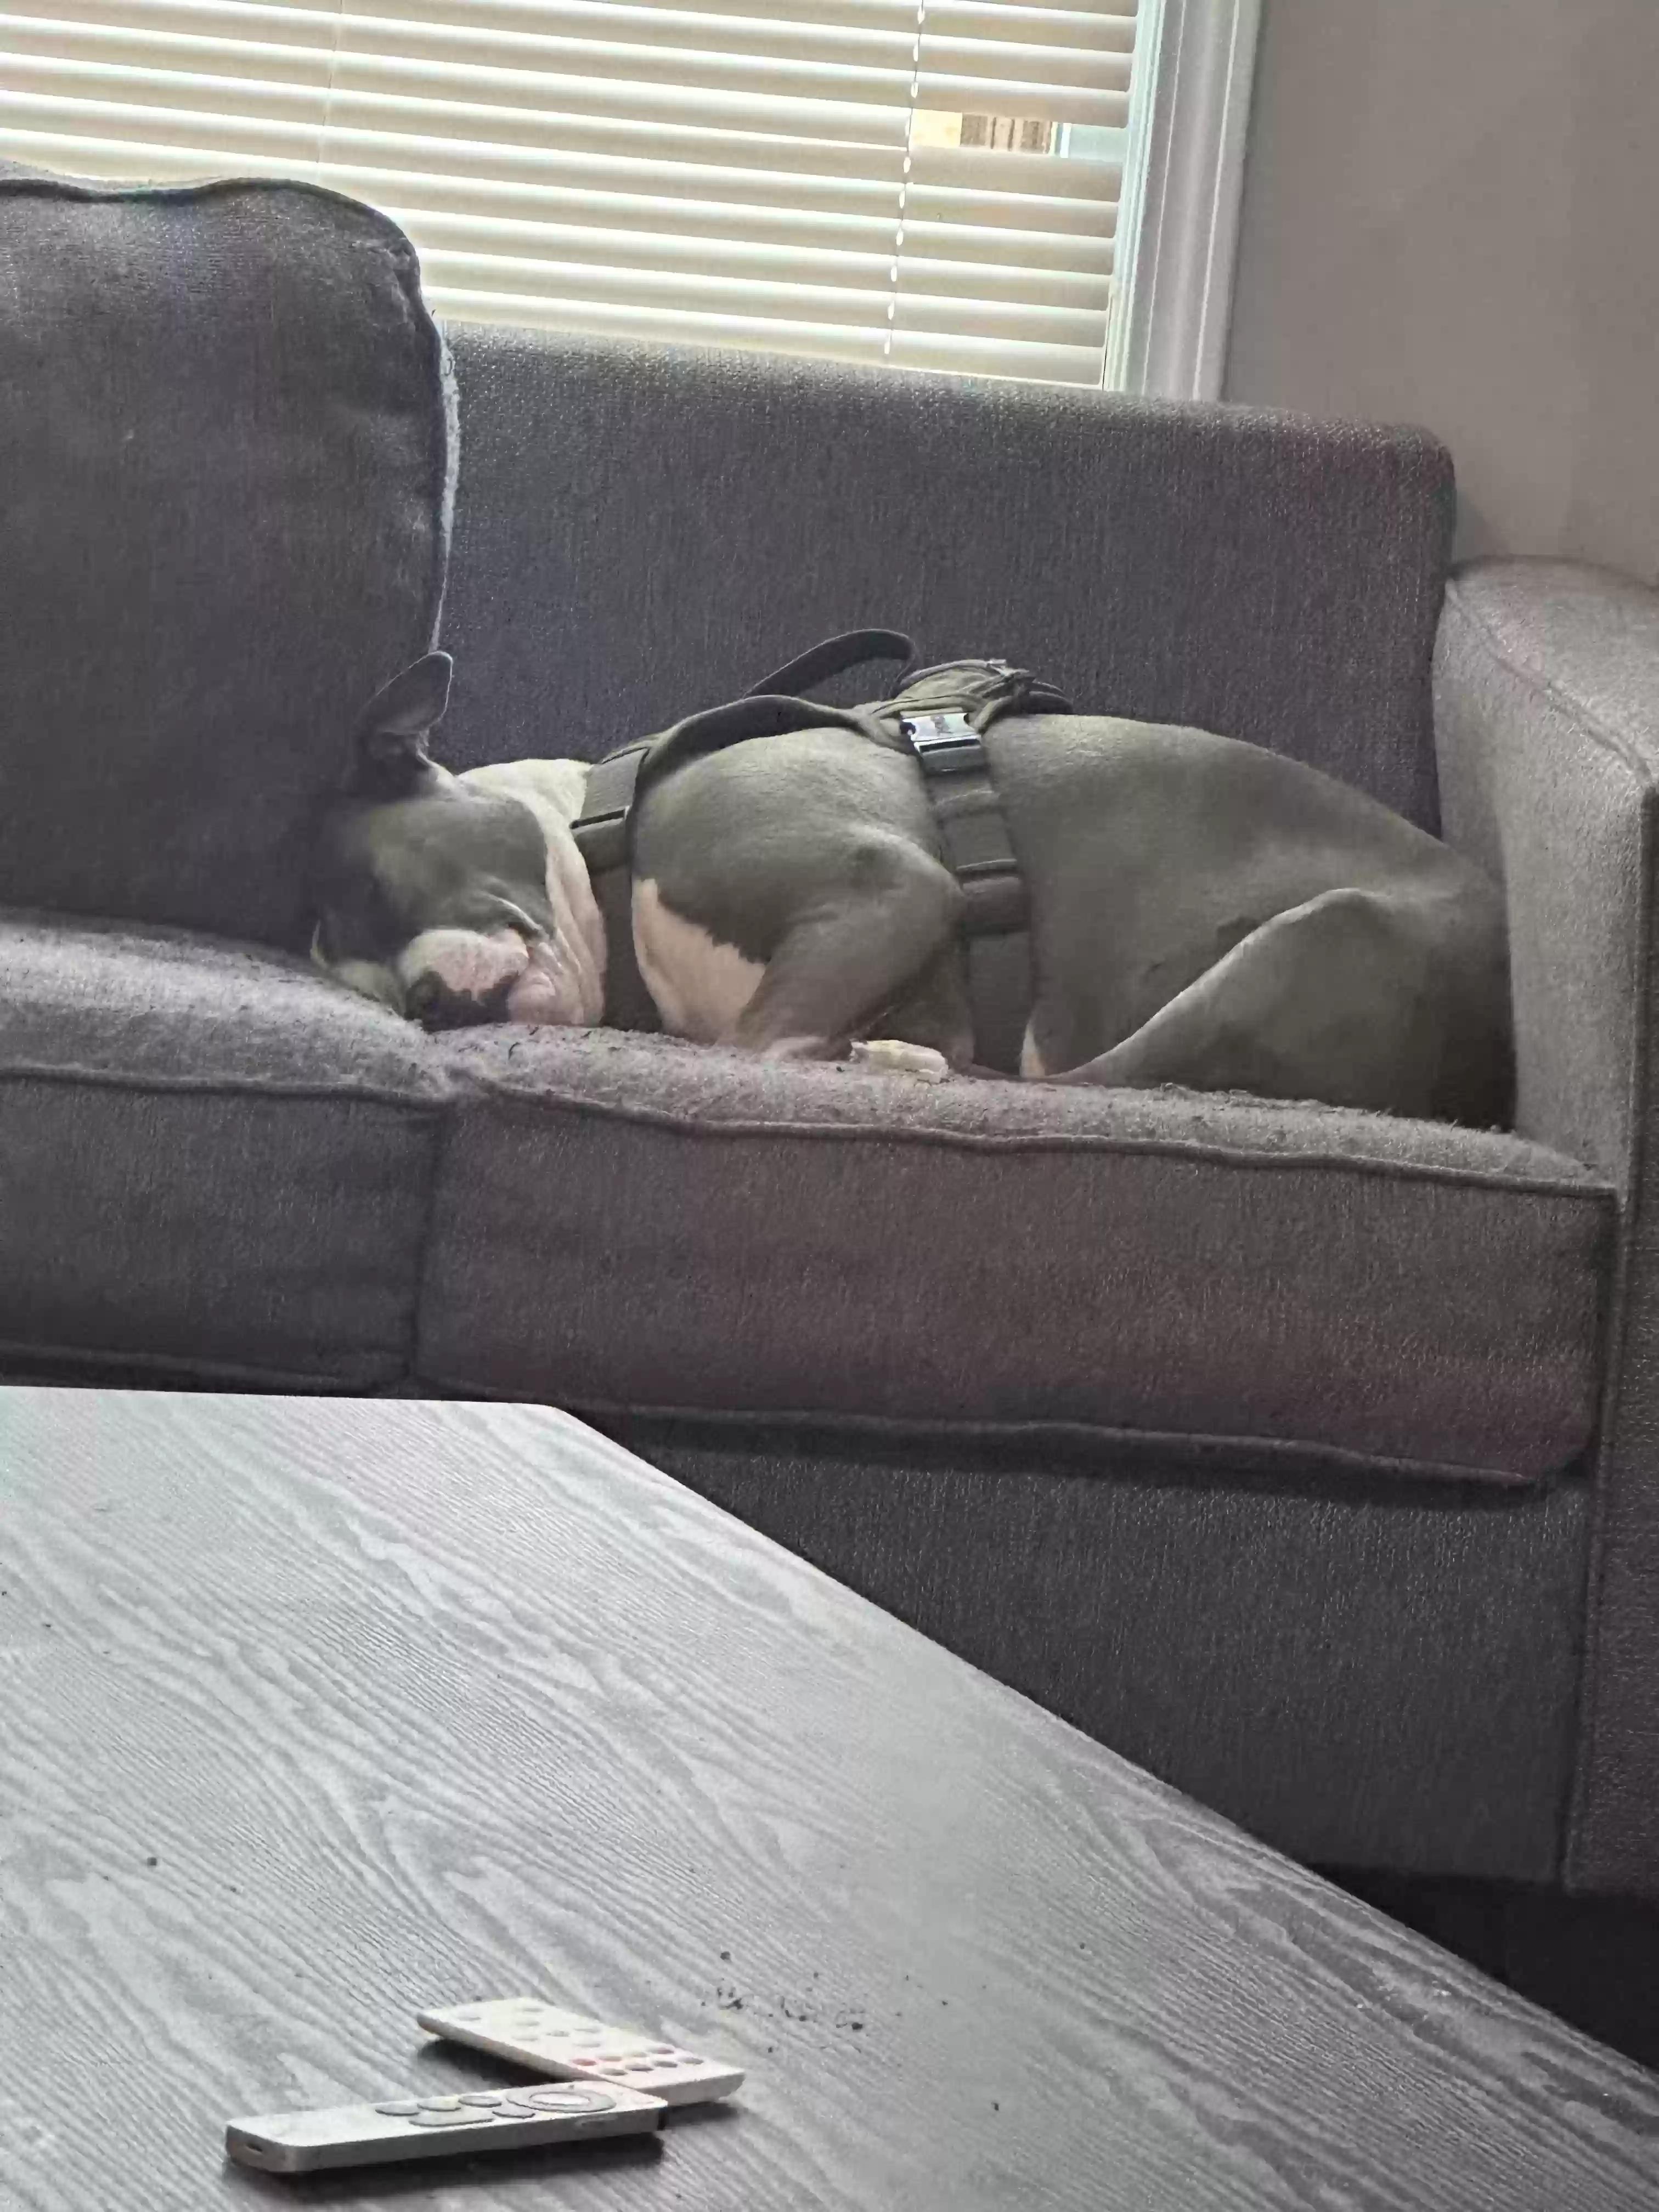 adoptable Dog in Atlanta,GA named Zora